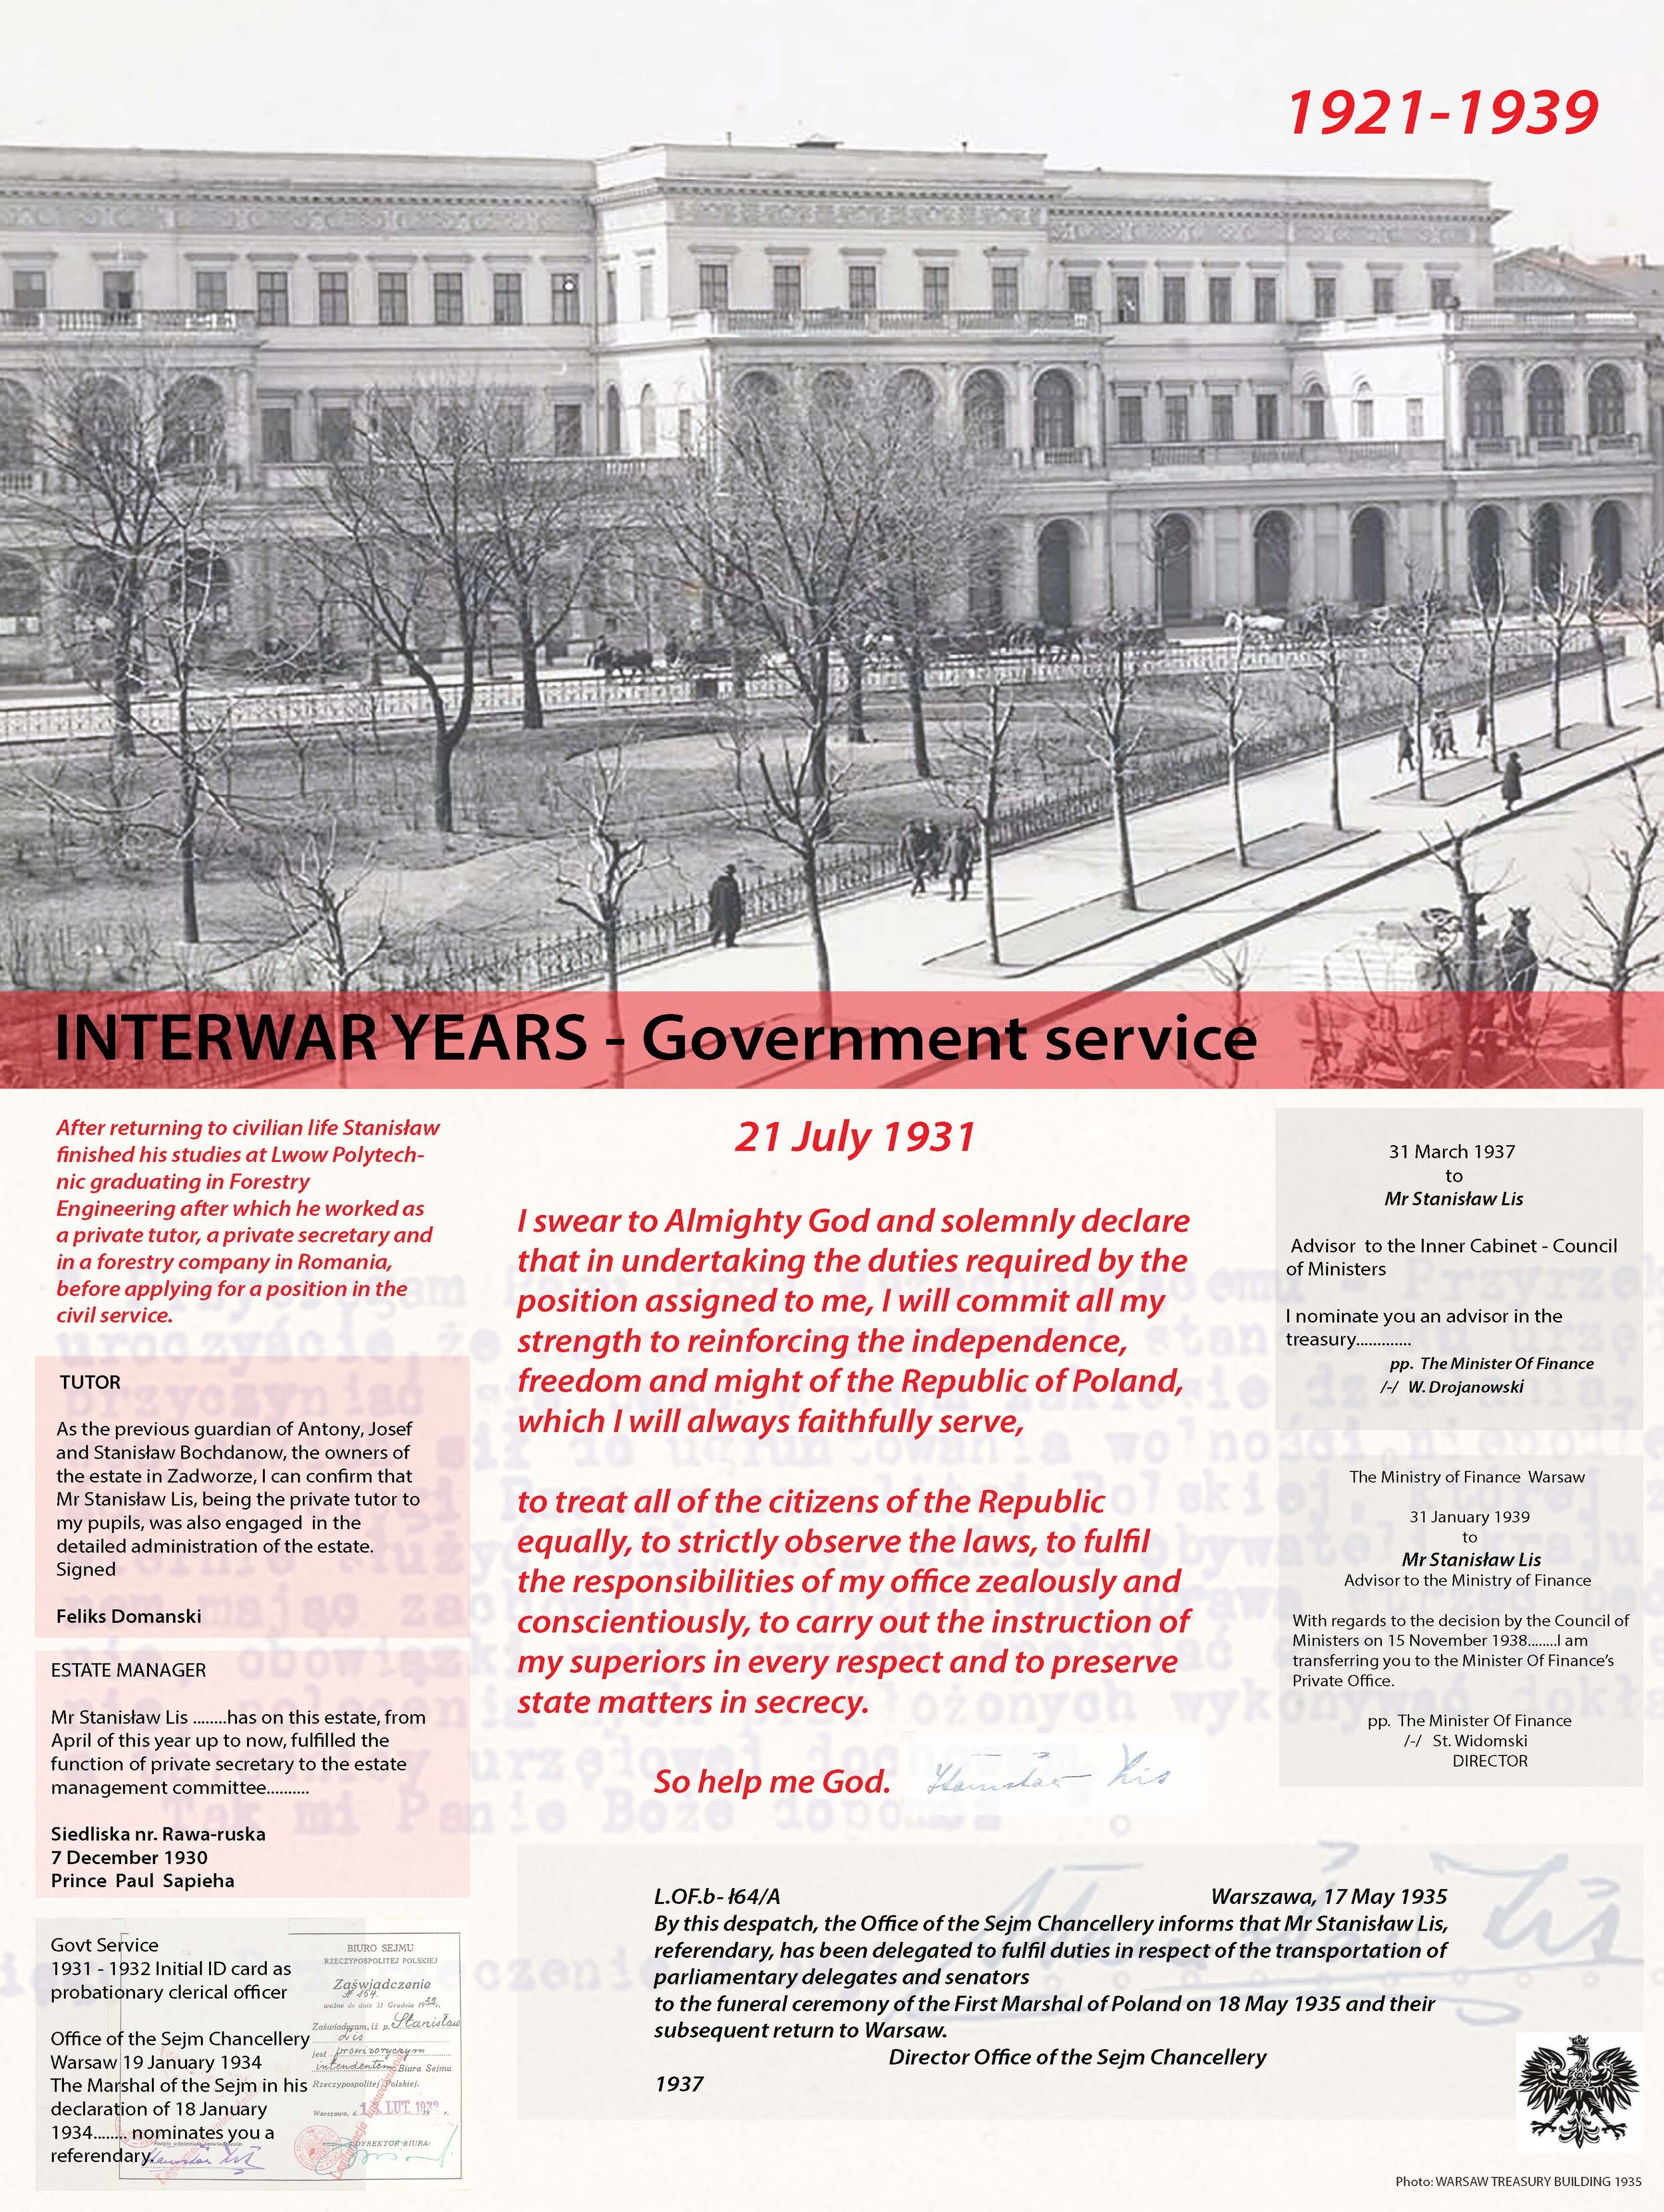 The interwar years - Treasury